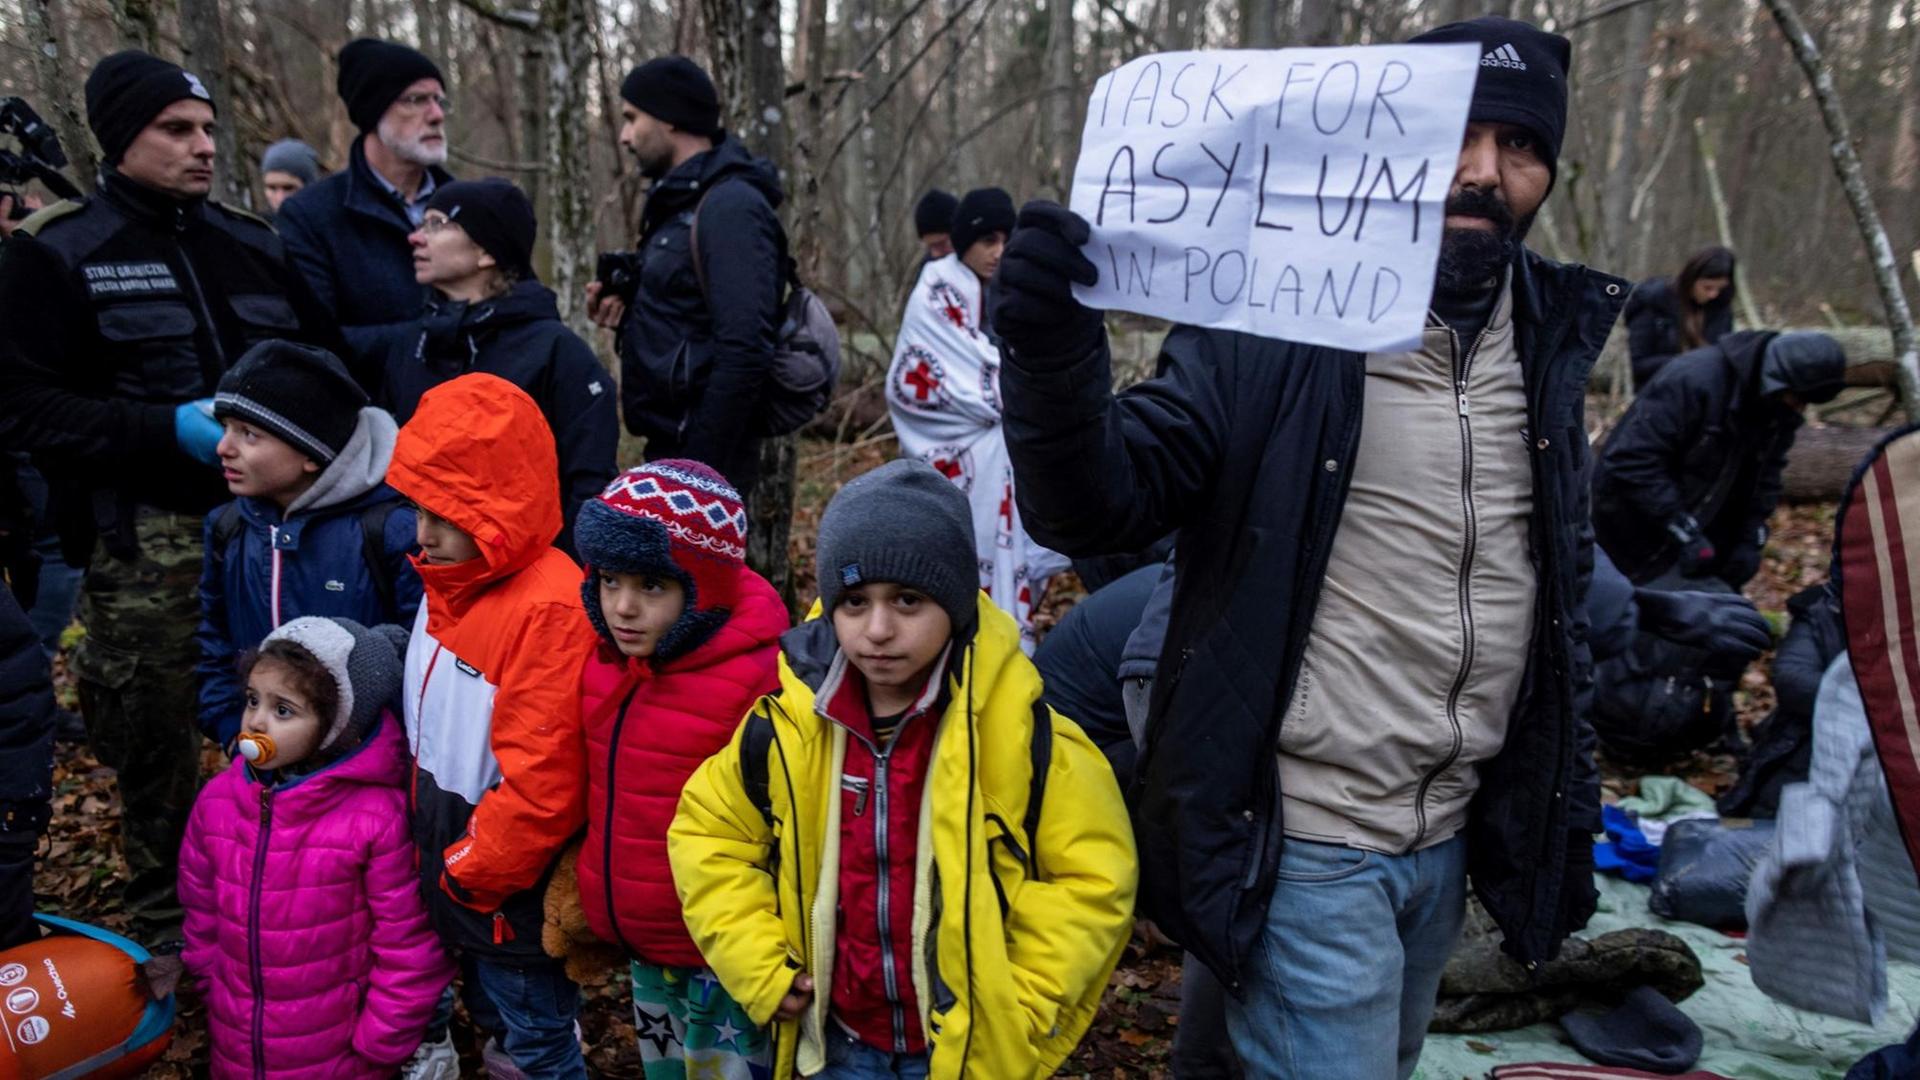 Kurdische Familie aus dem Irak im polnischen Narewka nahe der Grenze zu Belarus mit einem Schild "Ich suche Asyl in Polen"